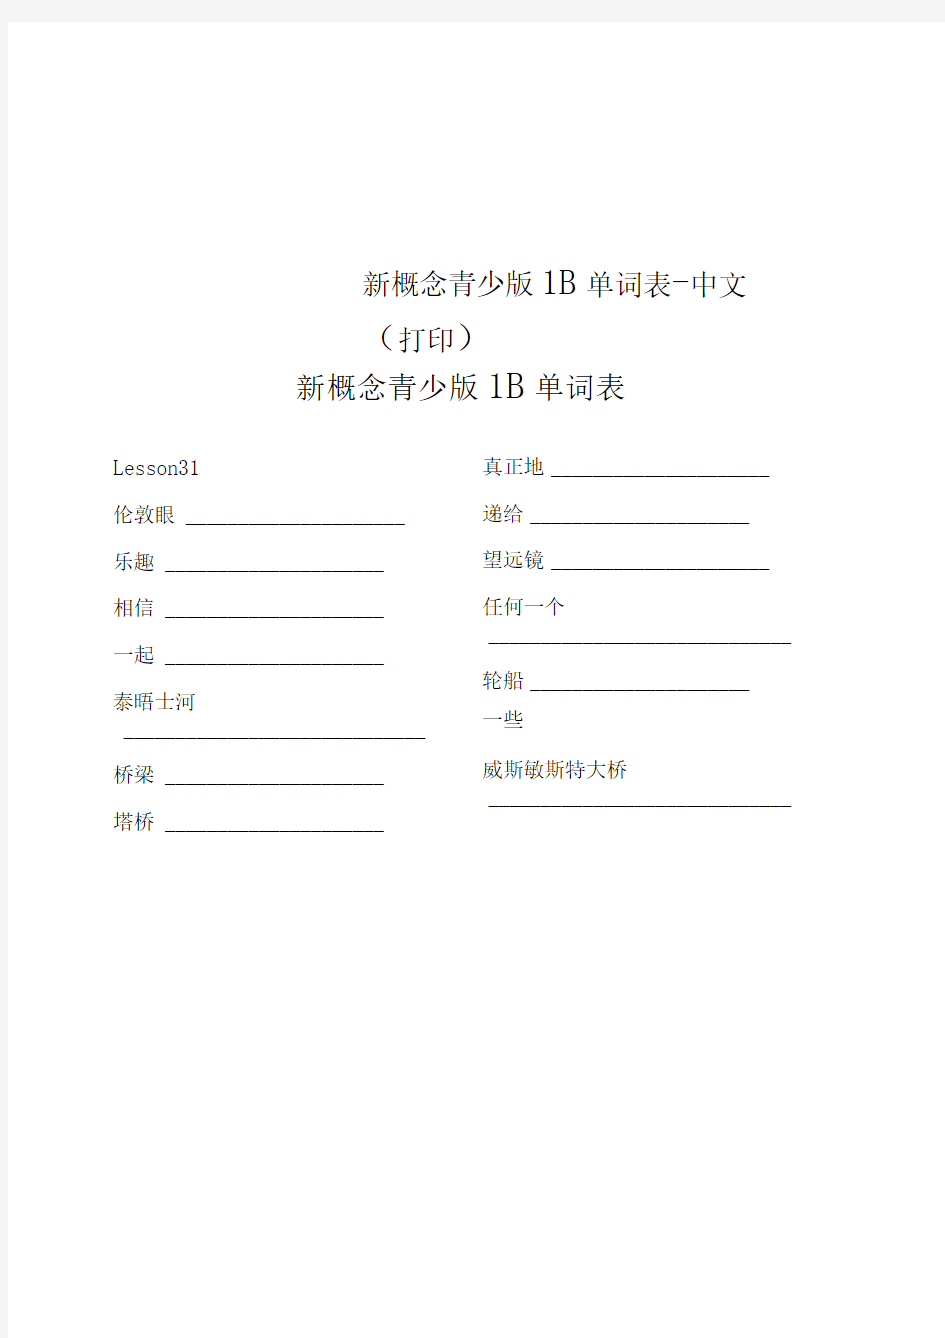 新概念青少版1B单词表-中文(打印)